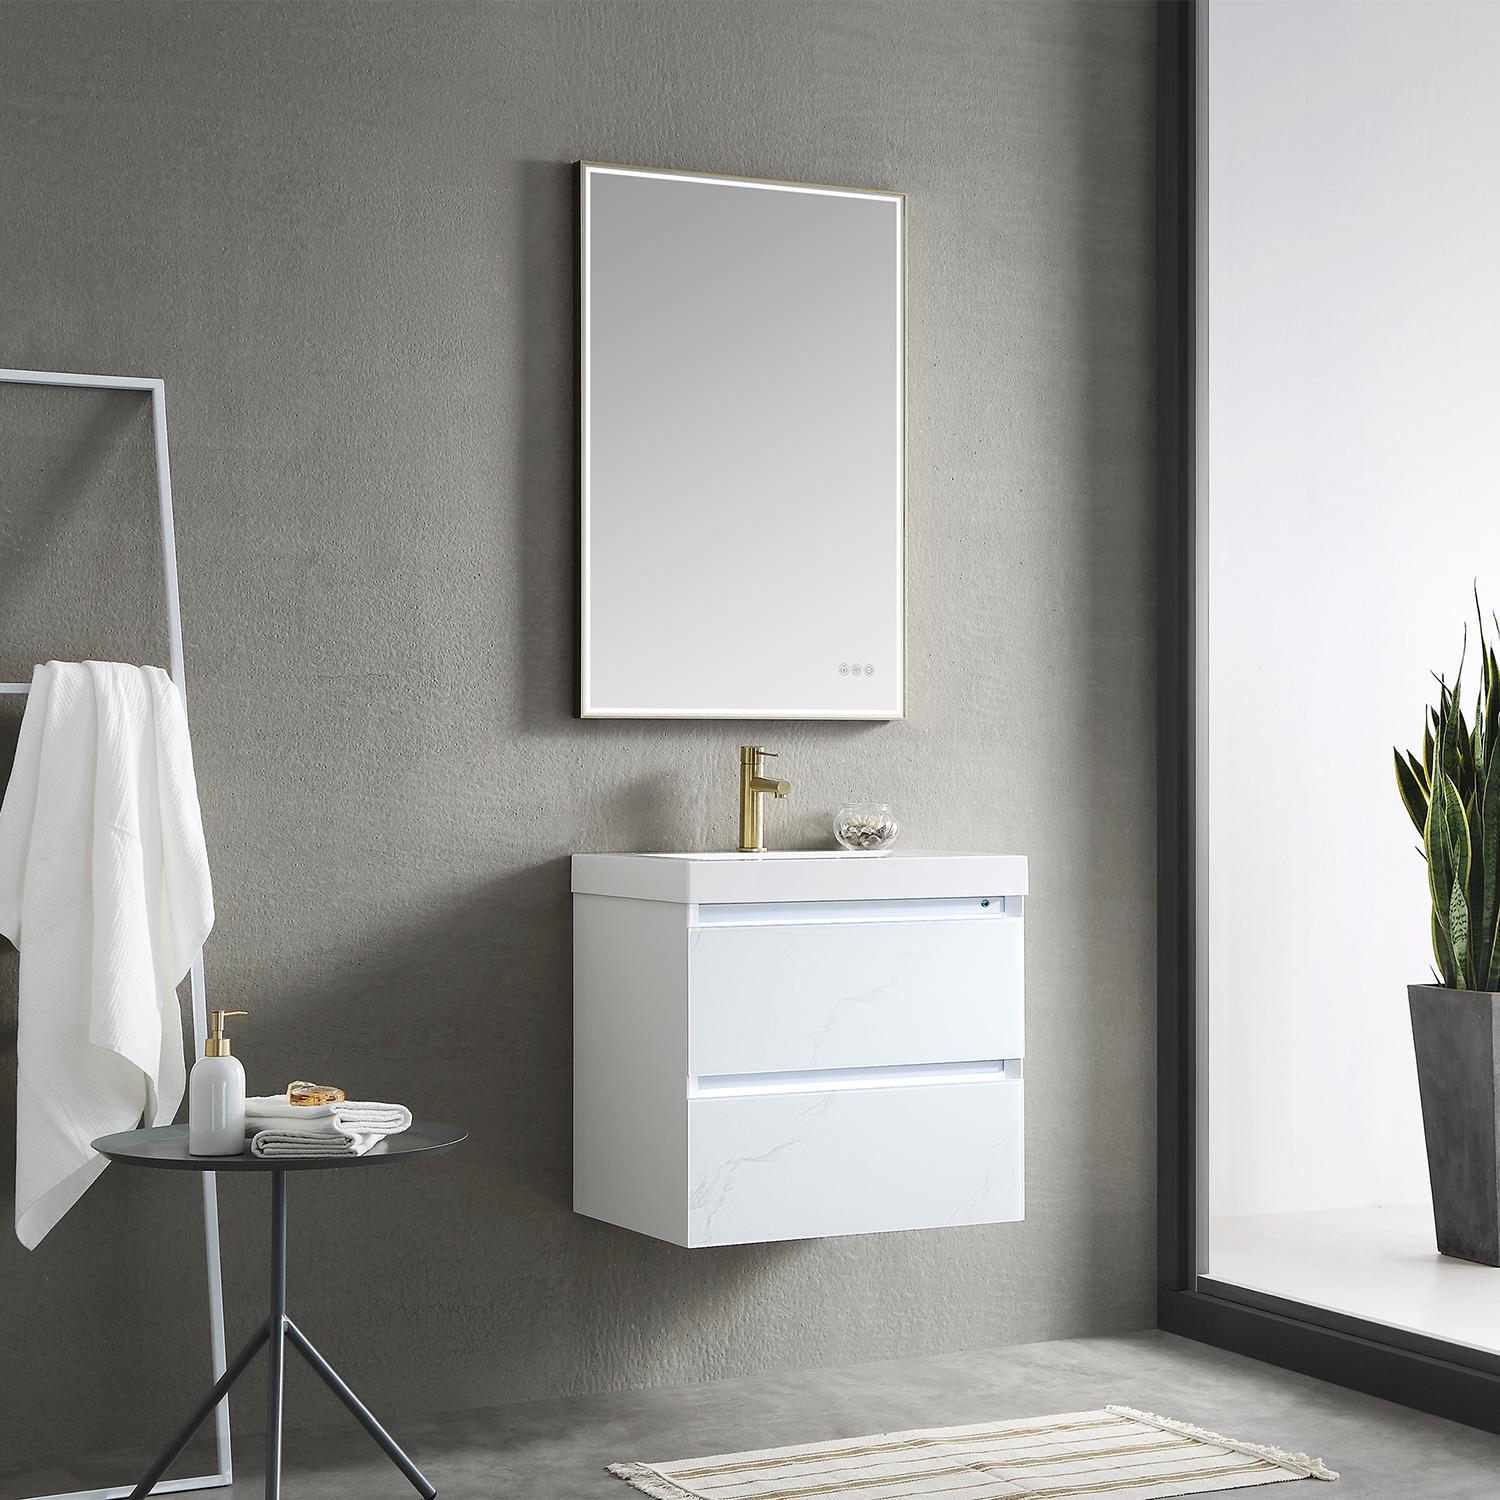 Jena 24" Bathroom Vanity with Acrylic Top - Luxury Bathroom Vanity